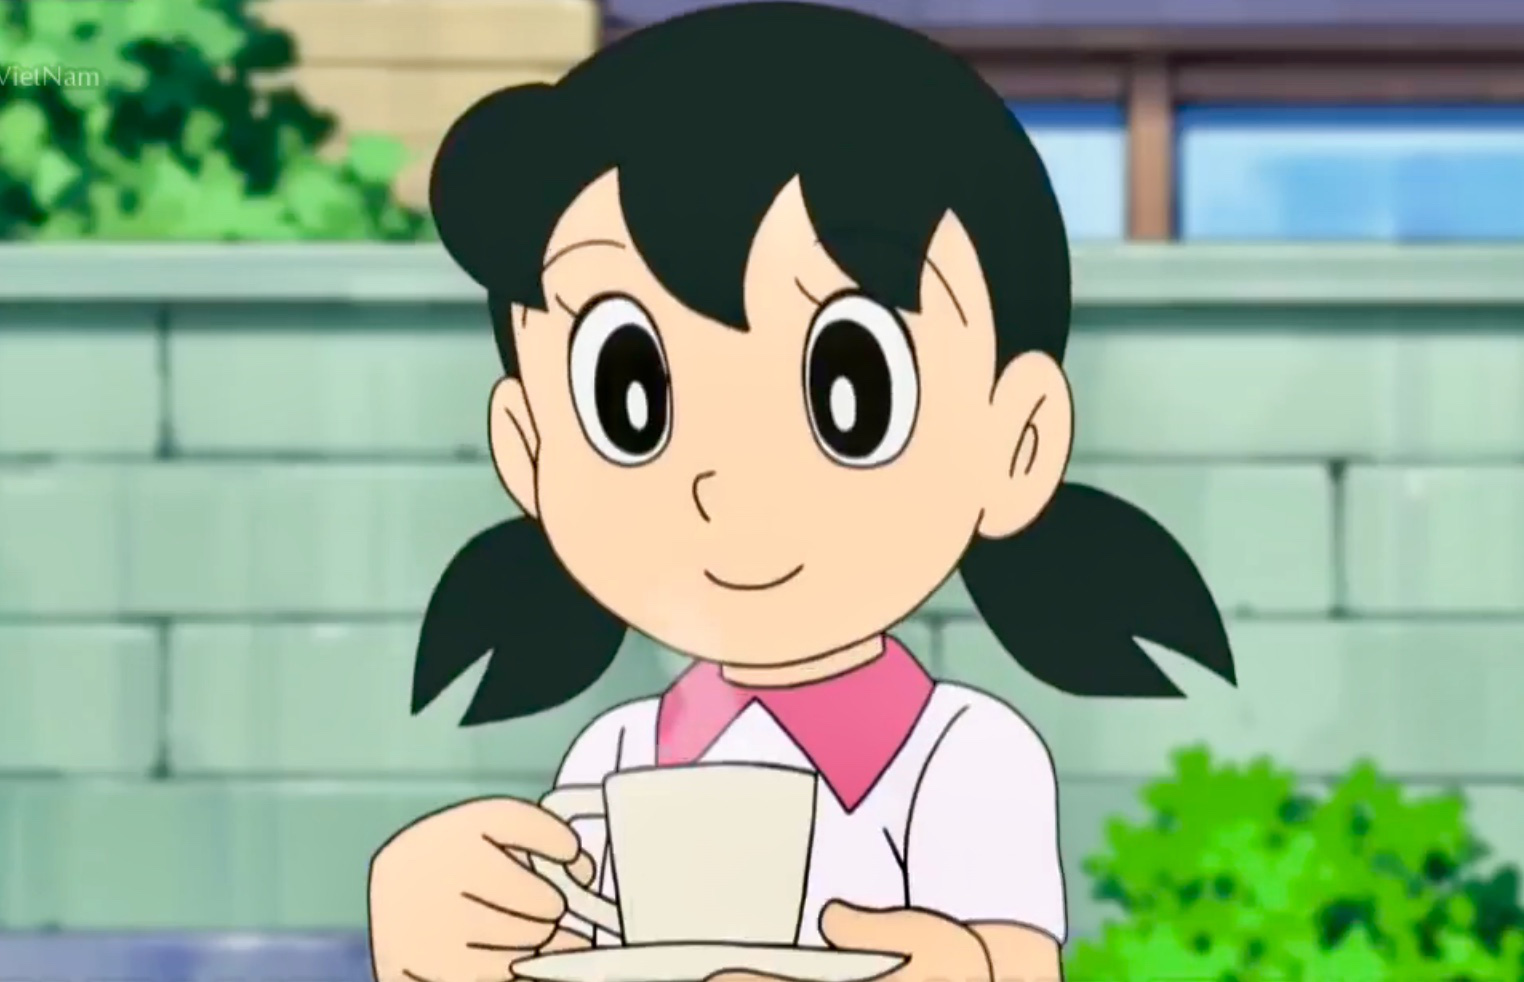 Shizuka là một trong những nhân vật quan trọng trong series anime Doraemon. Với vẻ ngoài xinh đẹp và tình cảm, Shizuka là một trong những nhân vật yêu thích của rất nhiều người. Hãy xem hình ảnh của Shizuka để hiểu thêm về cô nàng này!